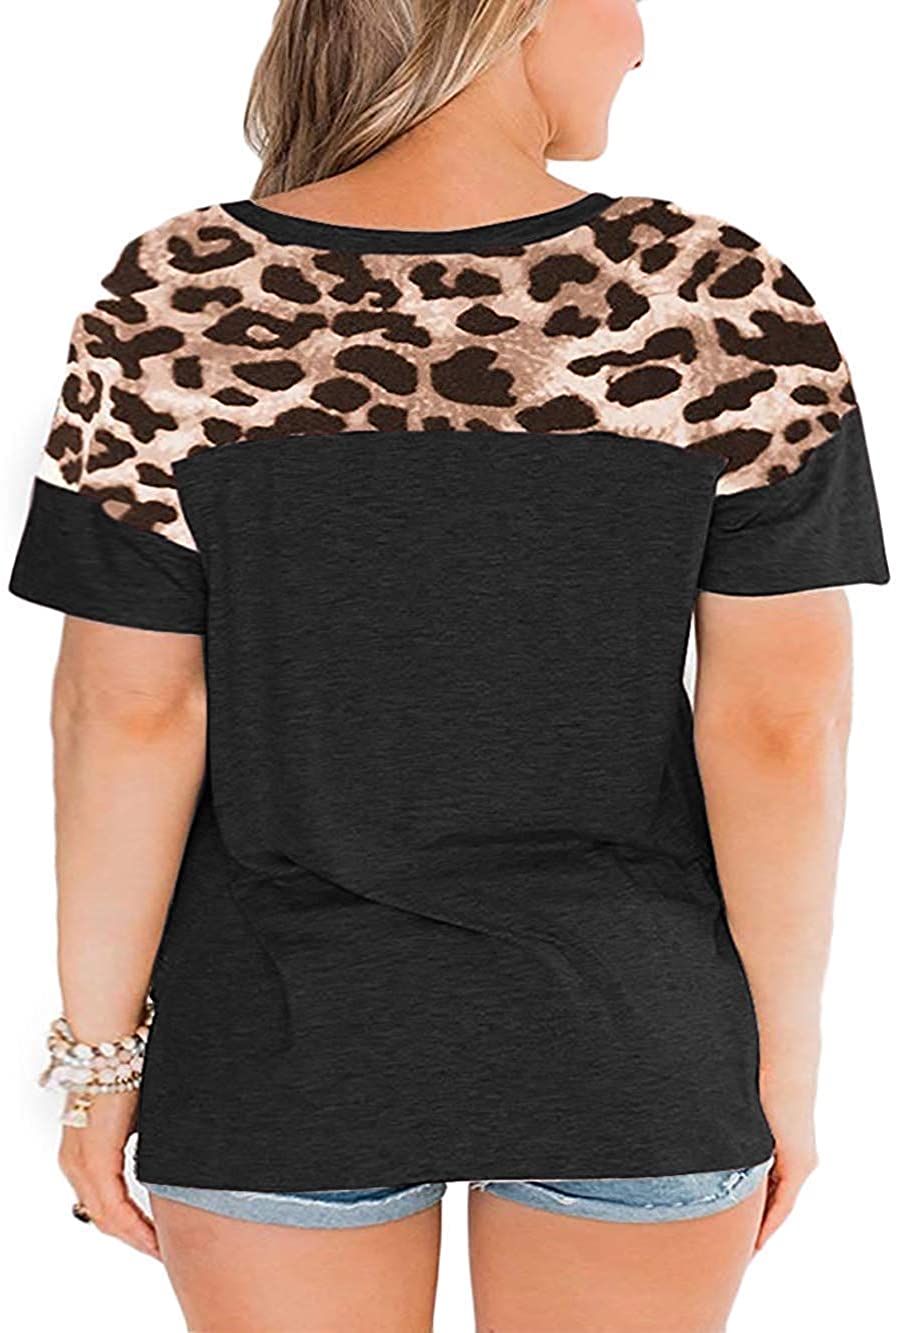 CCBSTS Womens Plus Size Leopard Print T Shirts Patchwork Short, Black